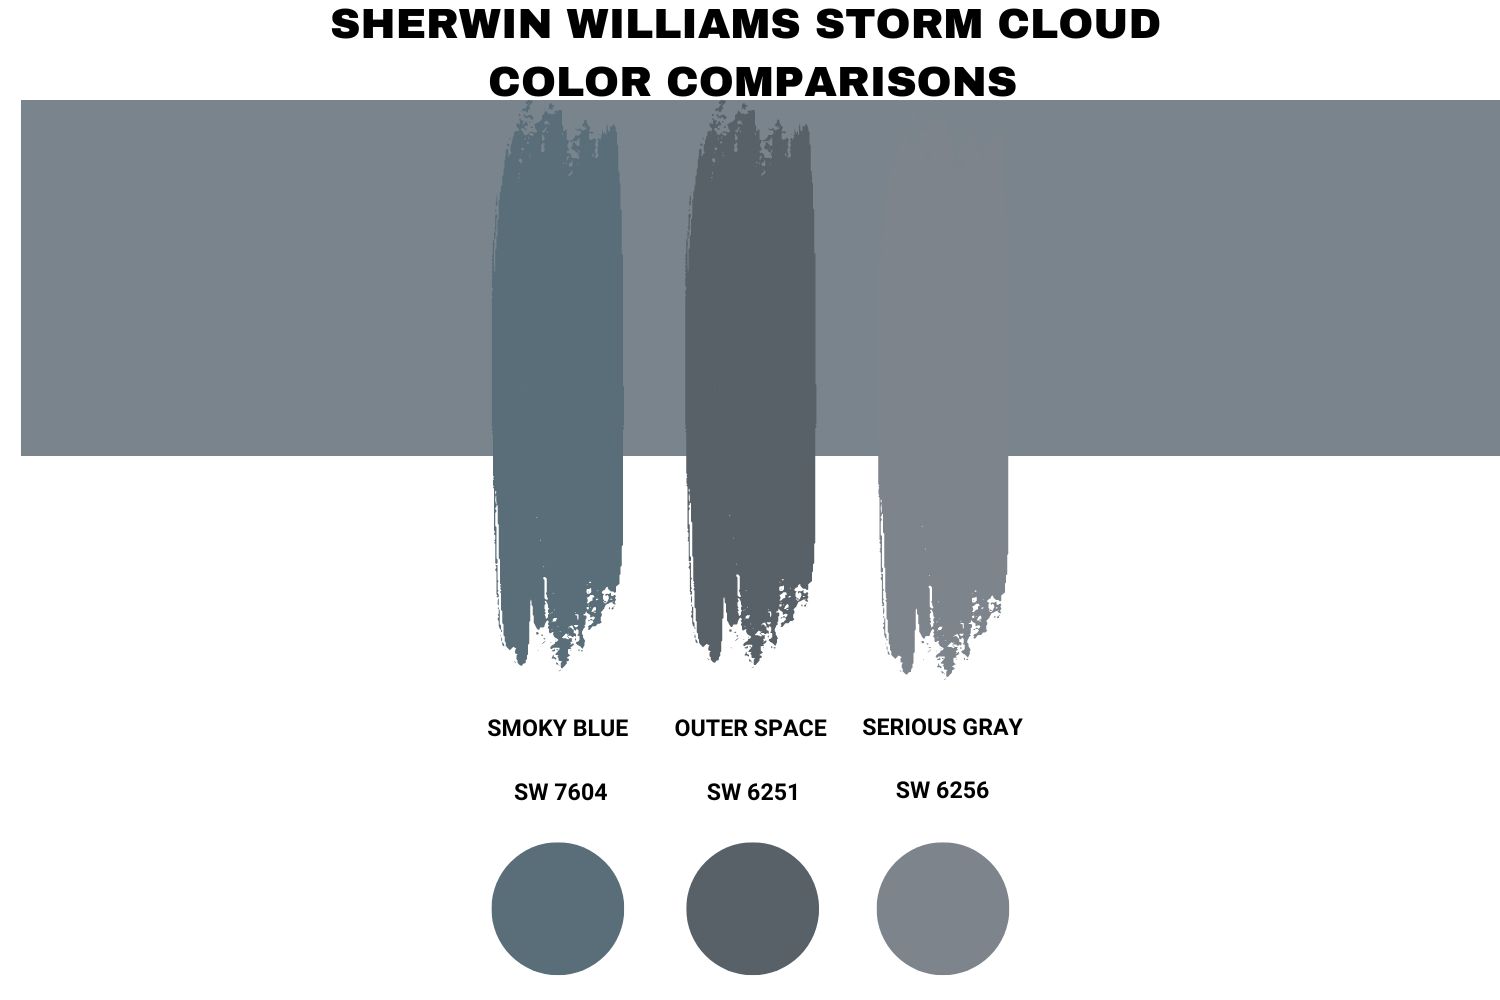 Sherwin Williams Storm Cloud Color Comparisons